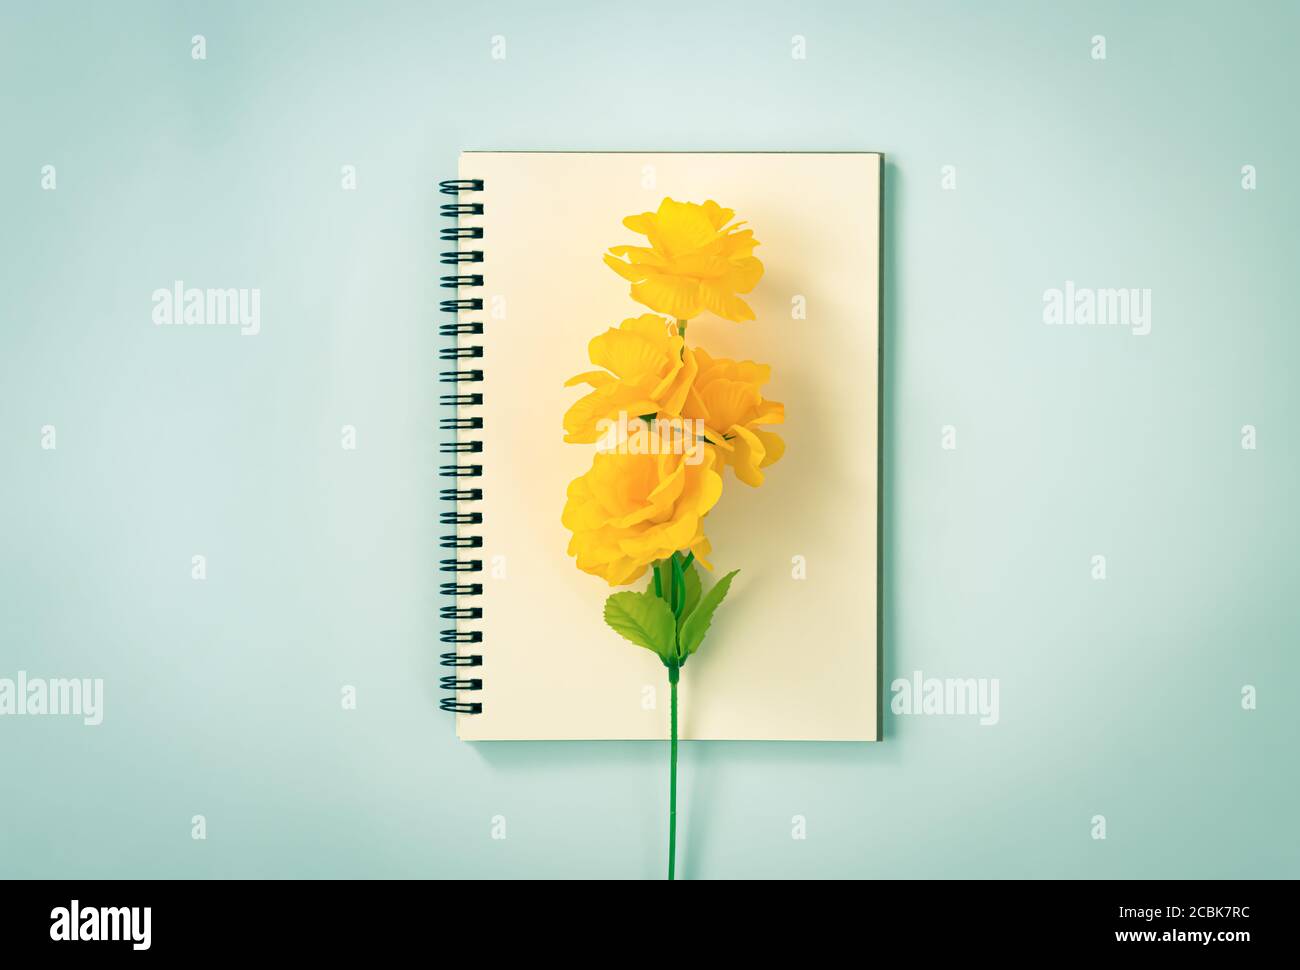 Spiral Notizbuch oder Spring Notizbuch in Unlined Type und Orange Blumen in der Mitte auf Blau Pastell minimalistischen Hintergrund. Spiral Notebook Mockup in der Mitte Stockfoto